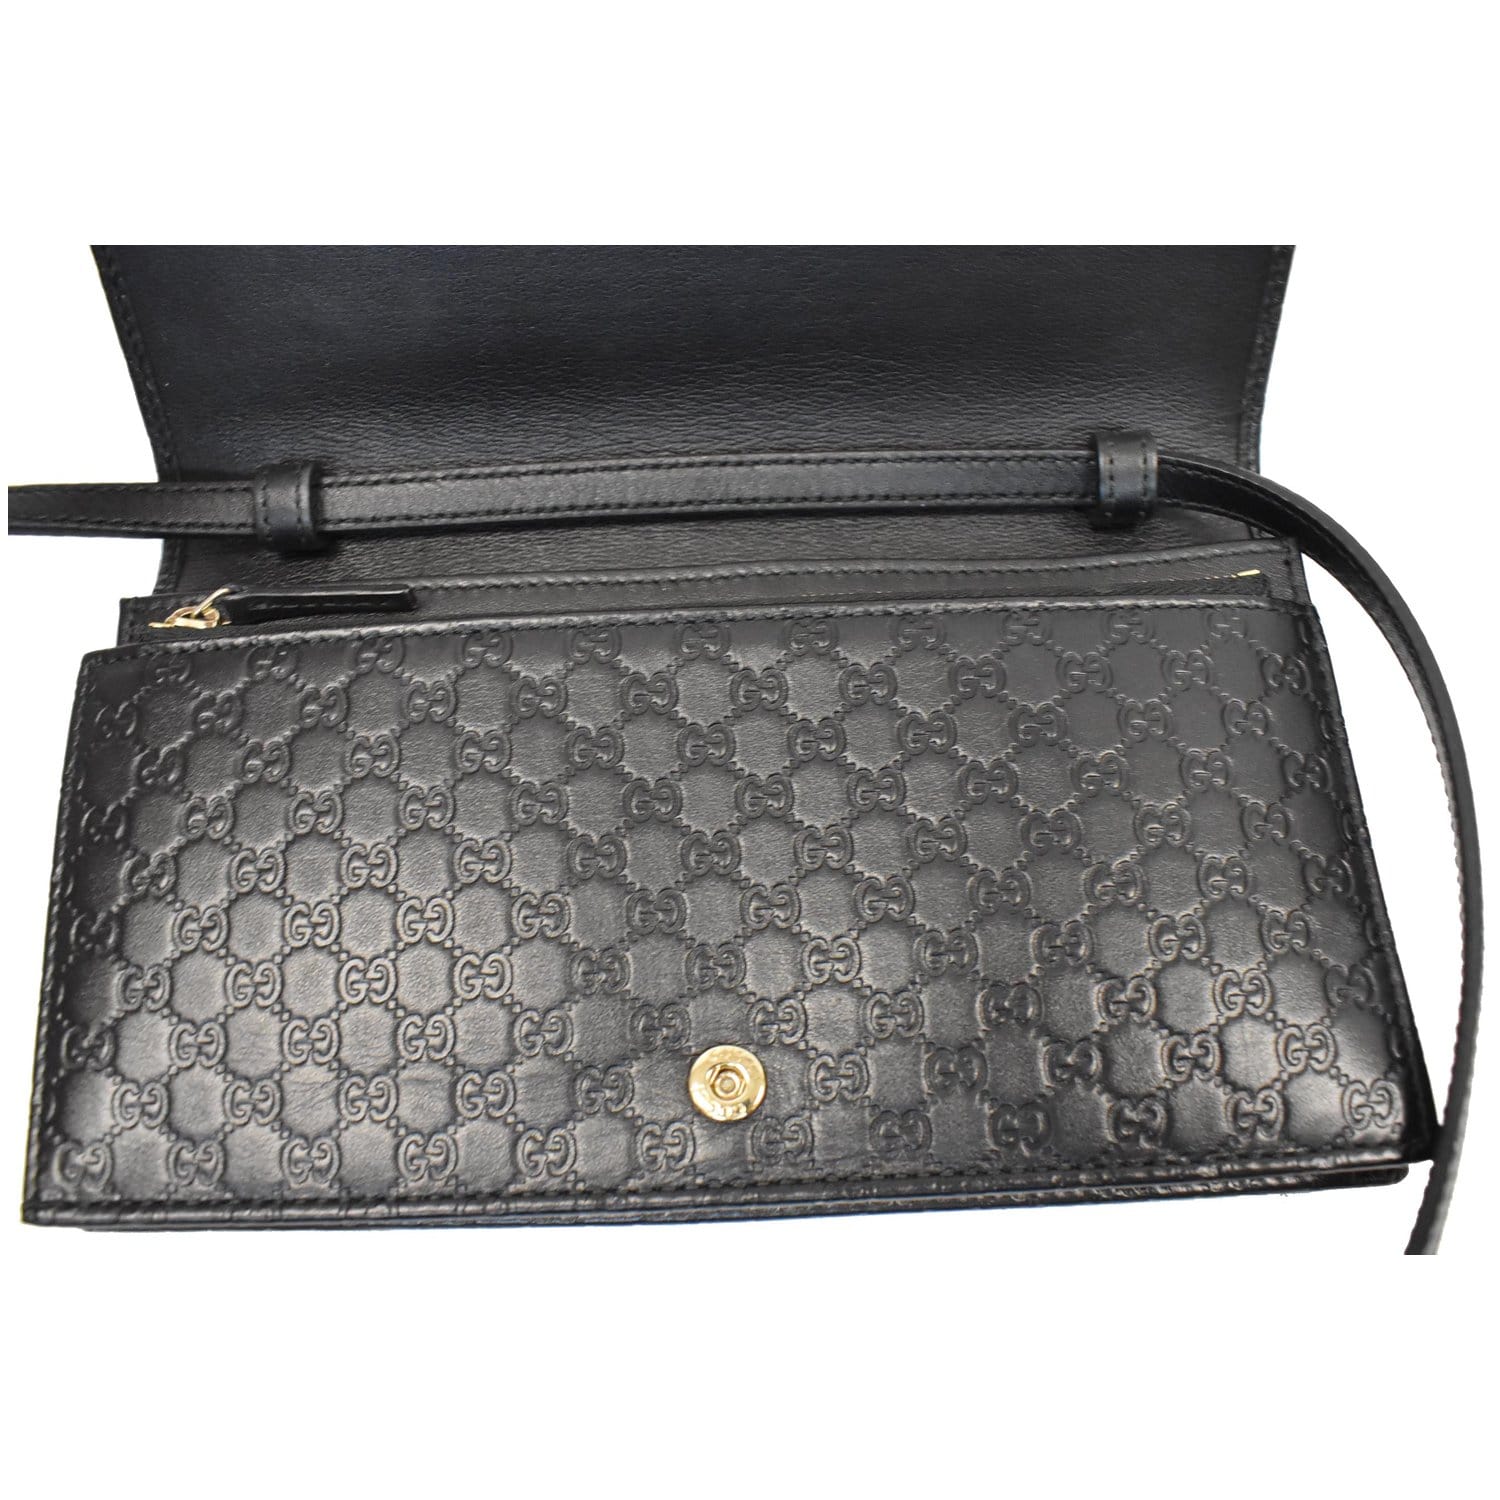 GUCCI GG Micro Guccissima Leather Crossbody Wallet Black 466507 - 15%